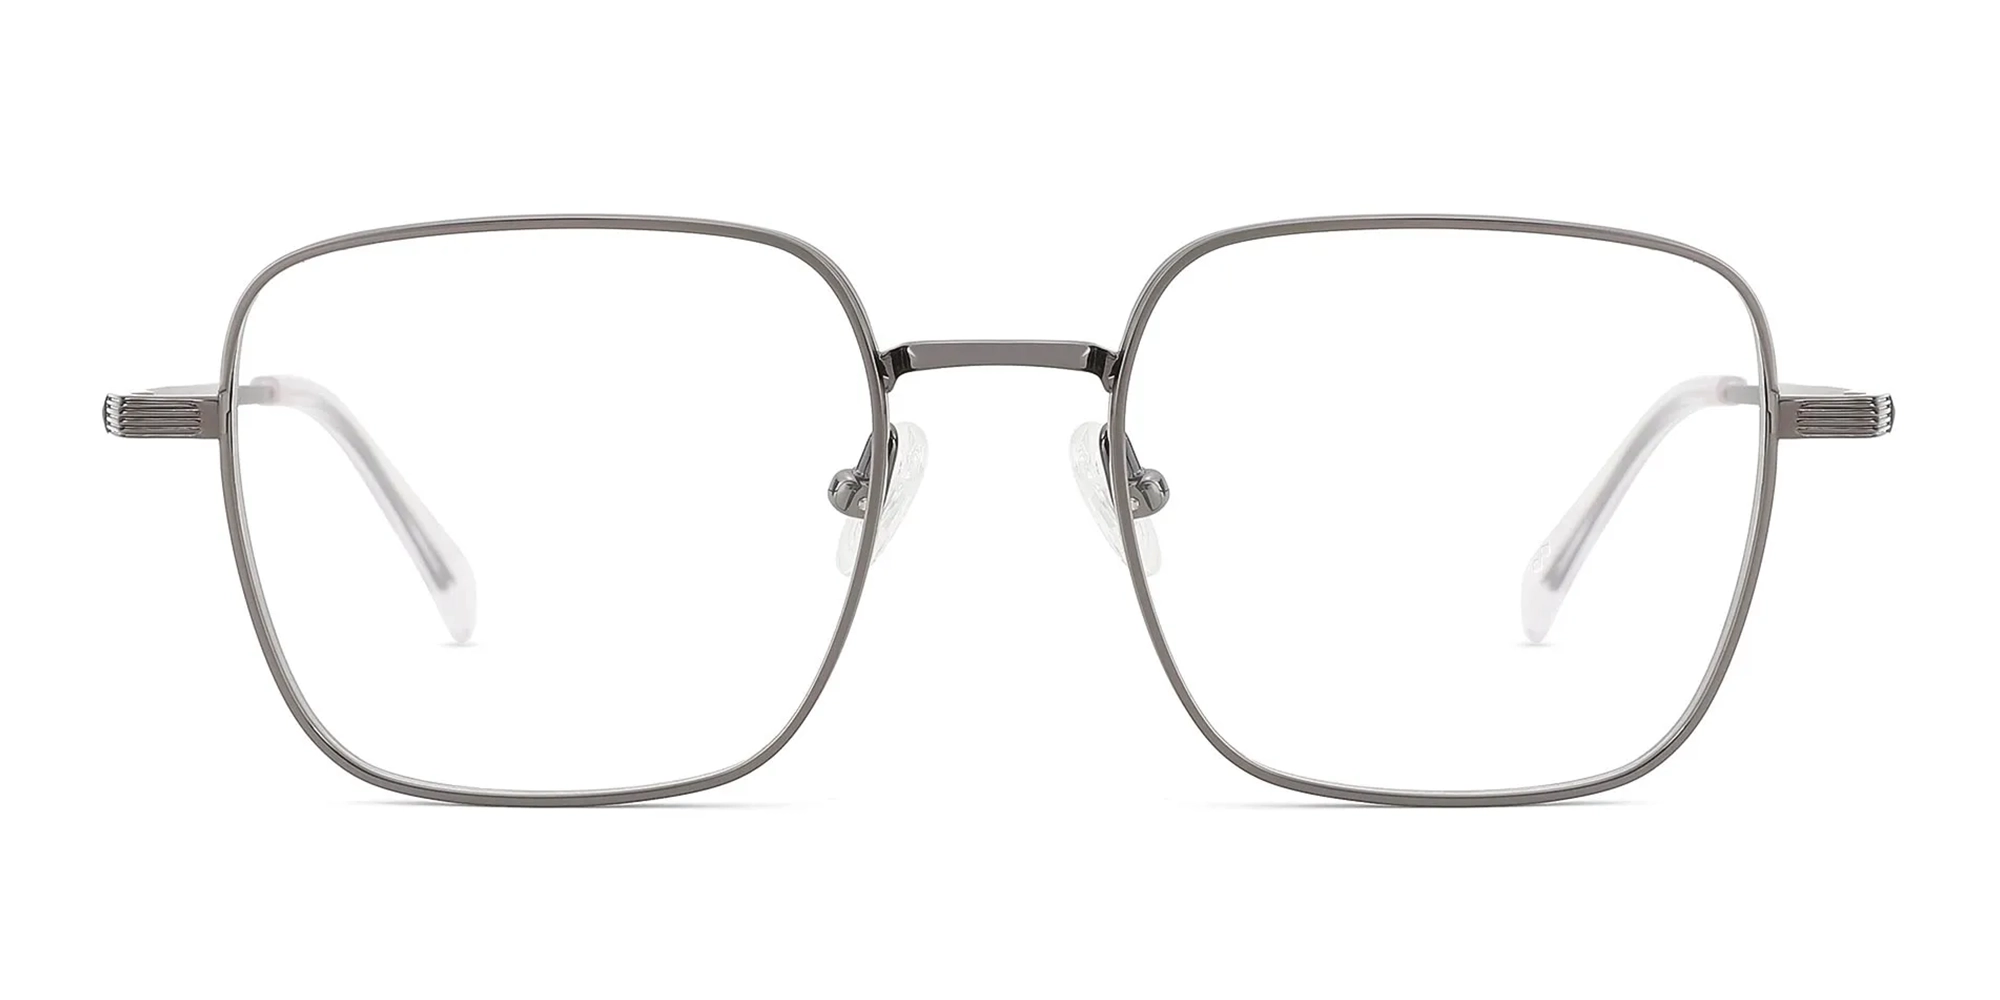 KENSINGTON 2 - Rectangular Wire Frame Glasses | Specscart.®